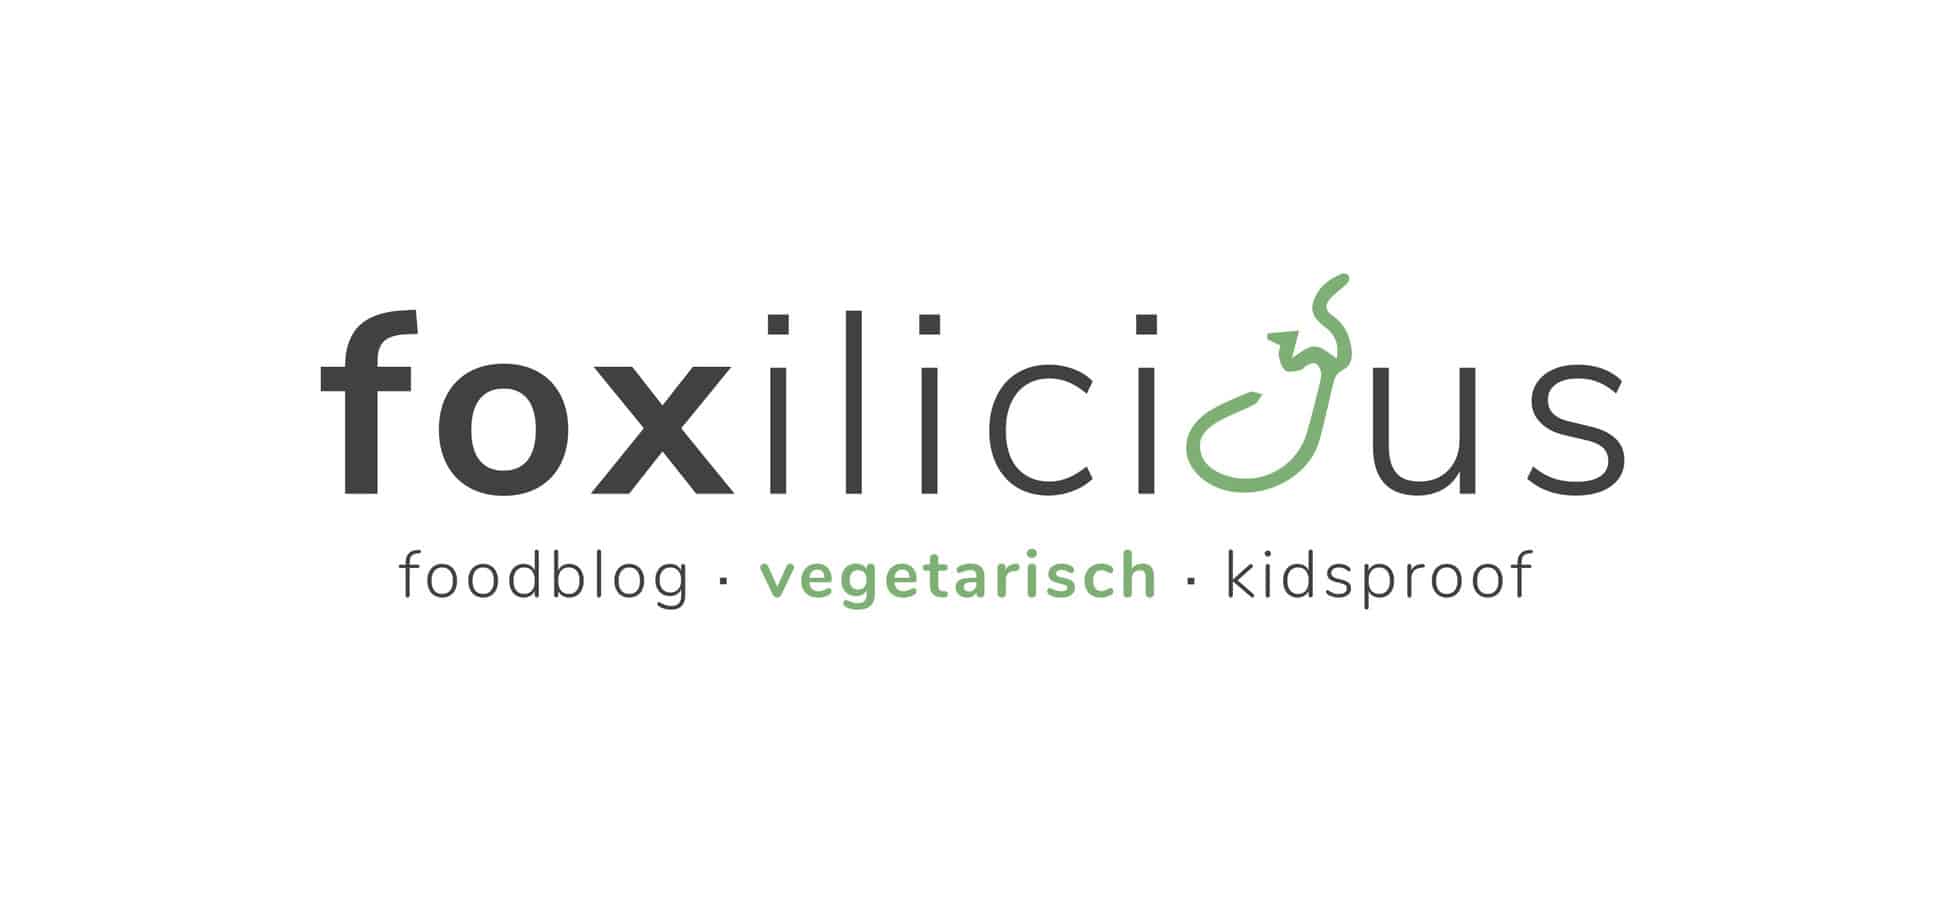 Foodblog vegetarisch kidsproof Foxilicious